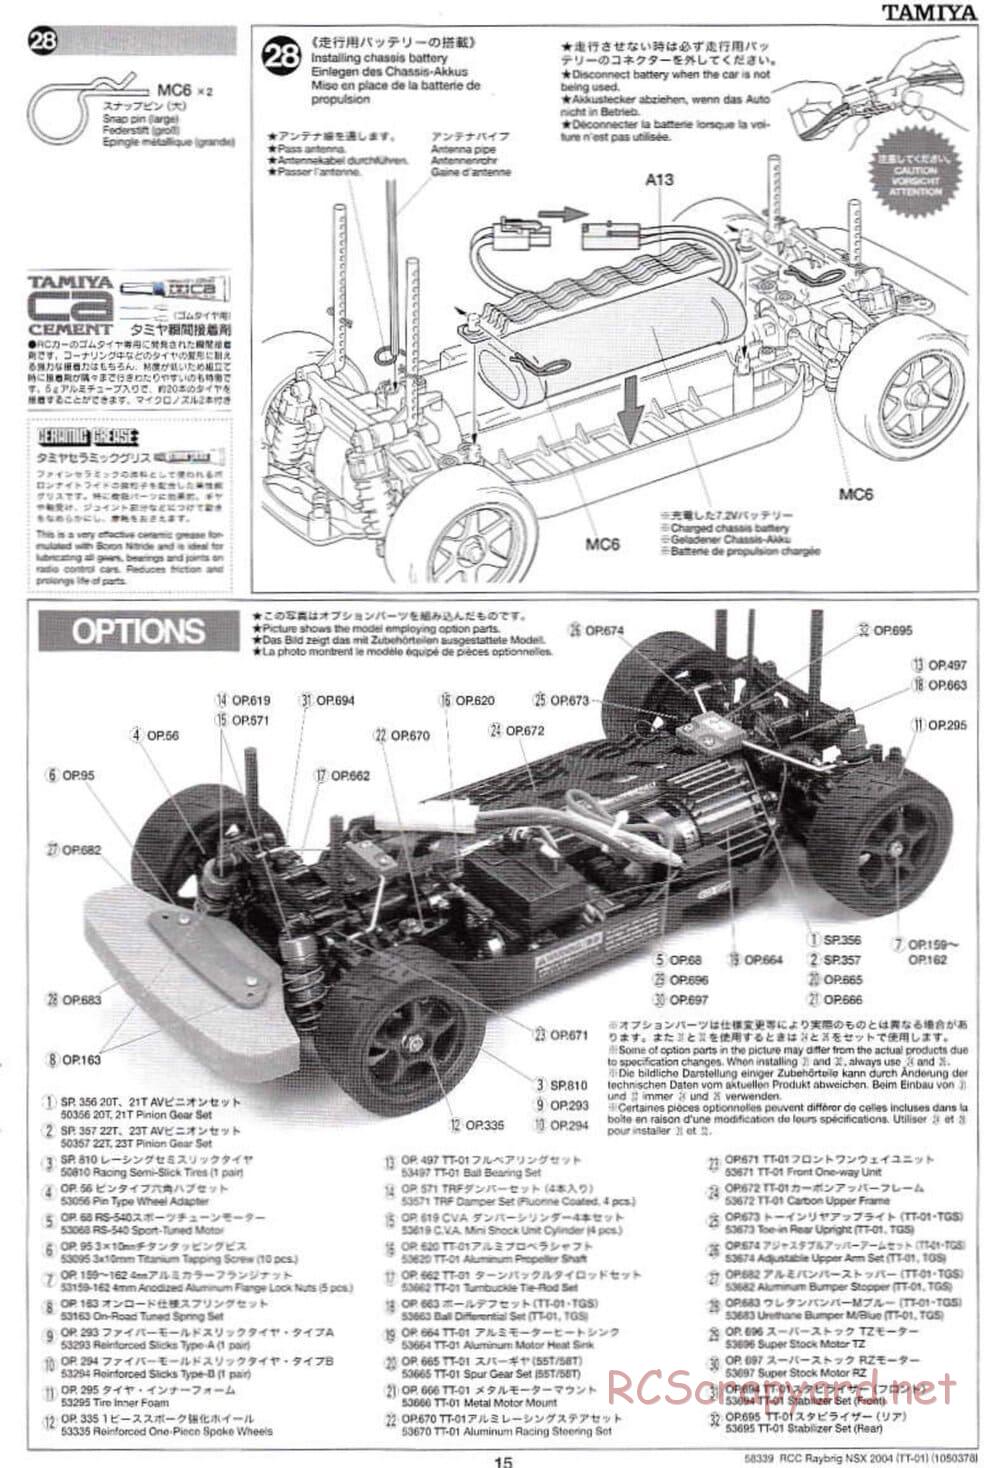 Tamiya - Raybrig NSX 2004 Chassis - Manual - Page 15